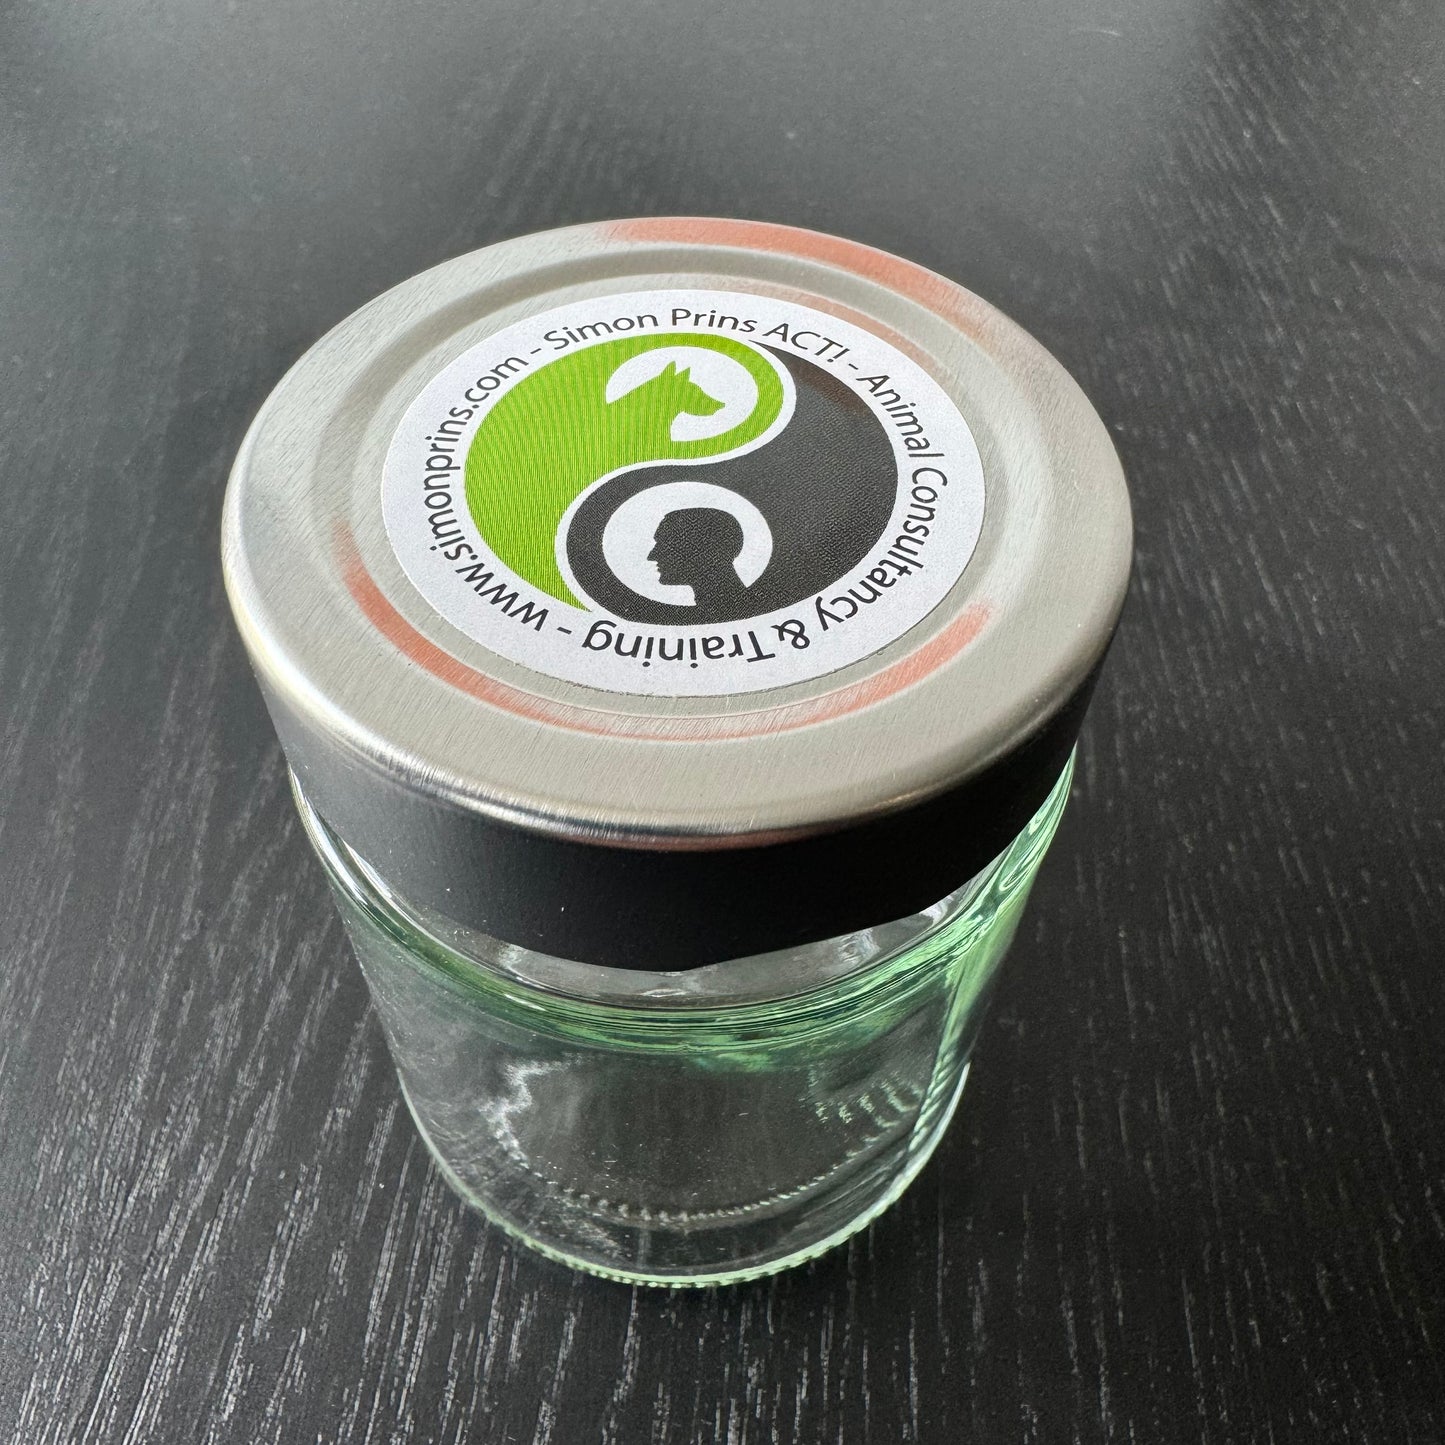 ODD + glass jar